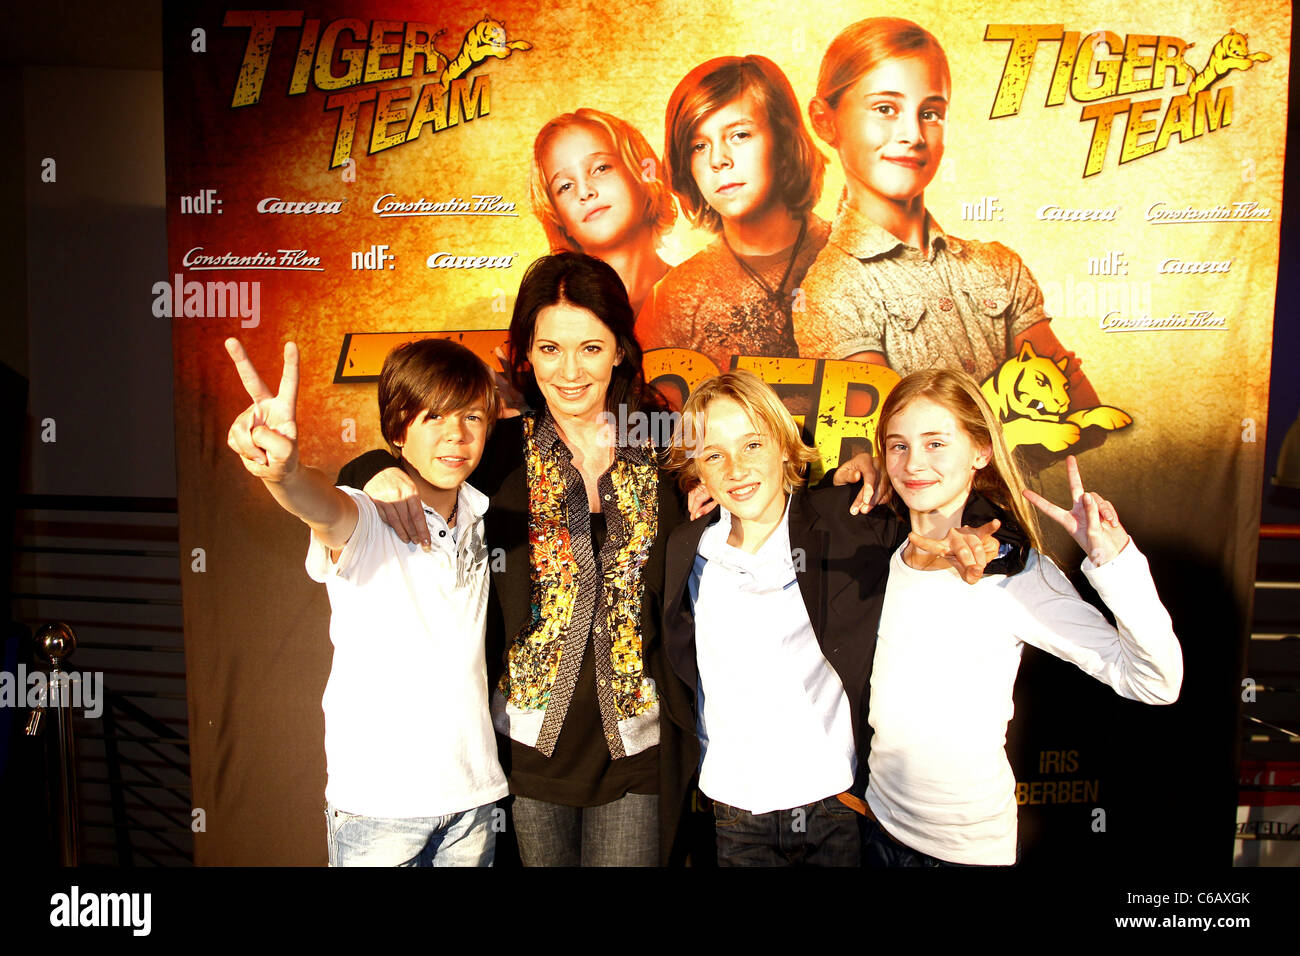 Bruno Schubert, Iris Berben, Justus Kammerer, Helena Siegmund-Schultze promoting their new movie 'Tiger Team' at CineWorld Stock Photo